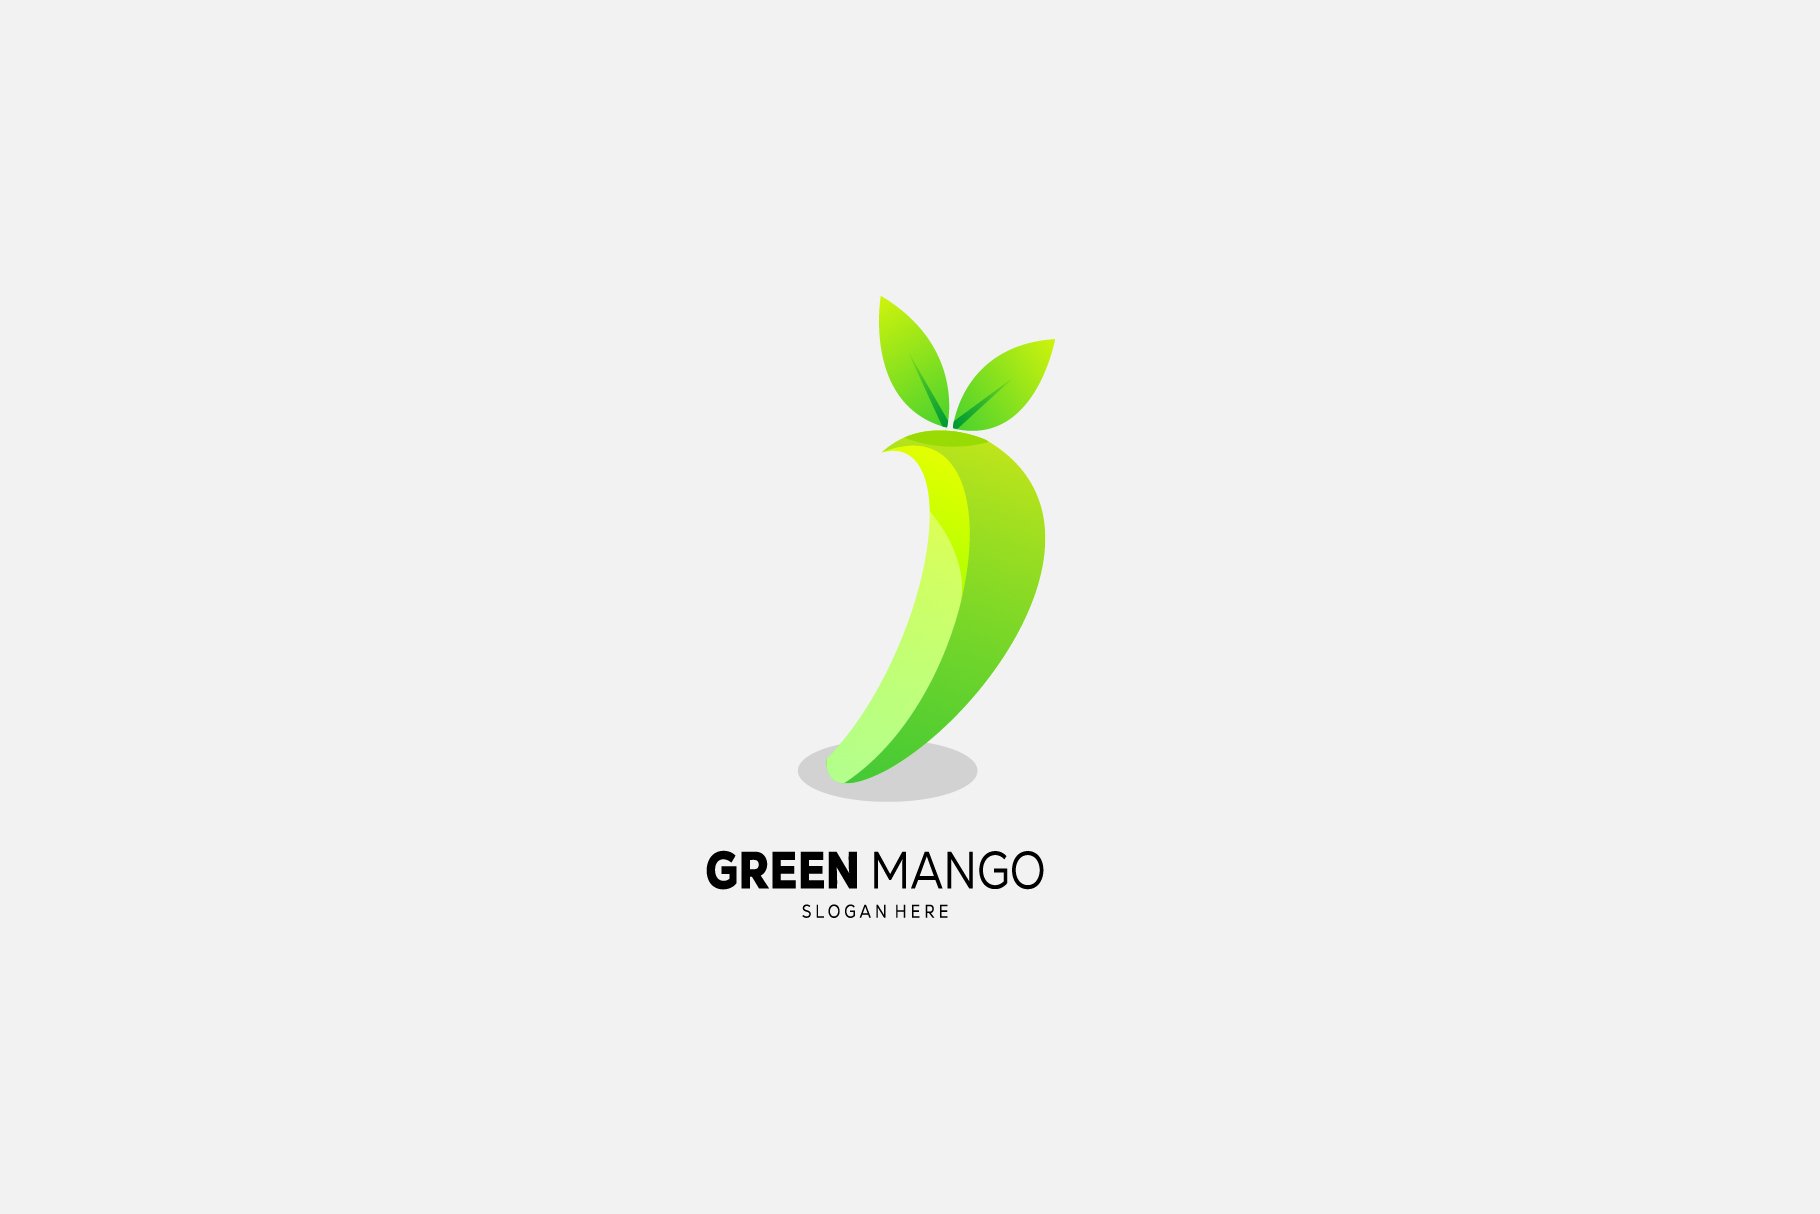 mango design gradient color icon cover image.